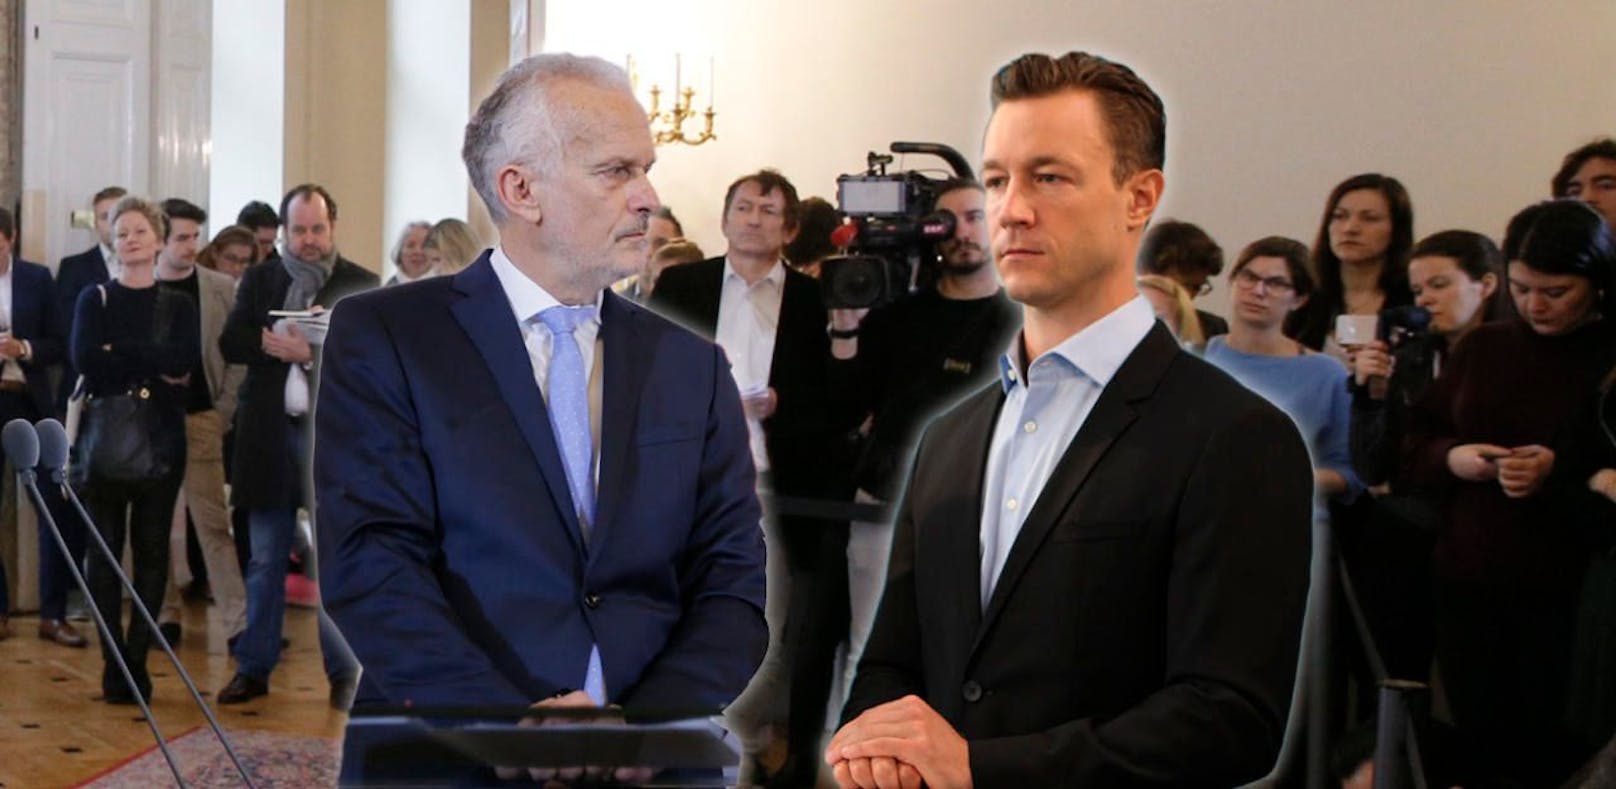 Uneinigkeit in der ÖVP: Kanzleramtsminister Gernot Blümel und Justizminister Josef Moser machten widersprüchliche Angaben zum geplanten Erwachsenenschutzgesetz.